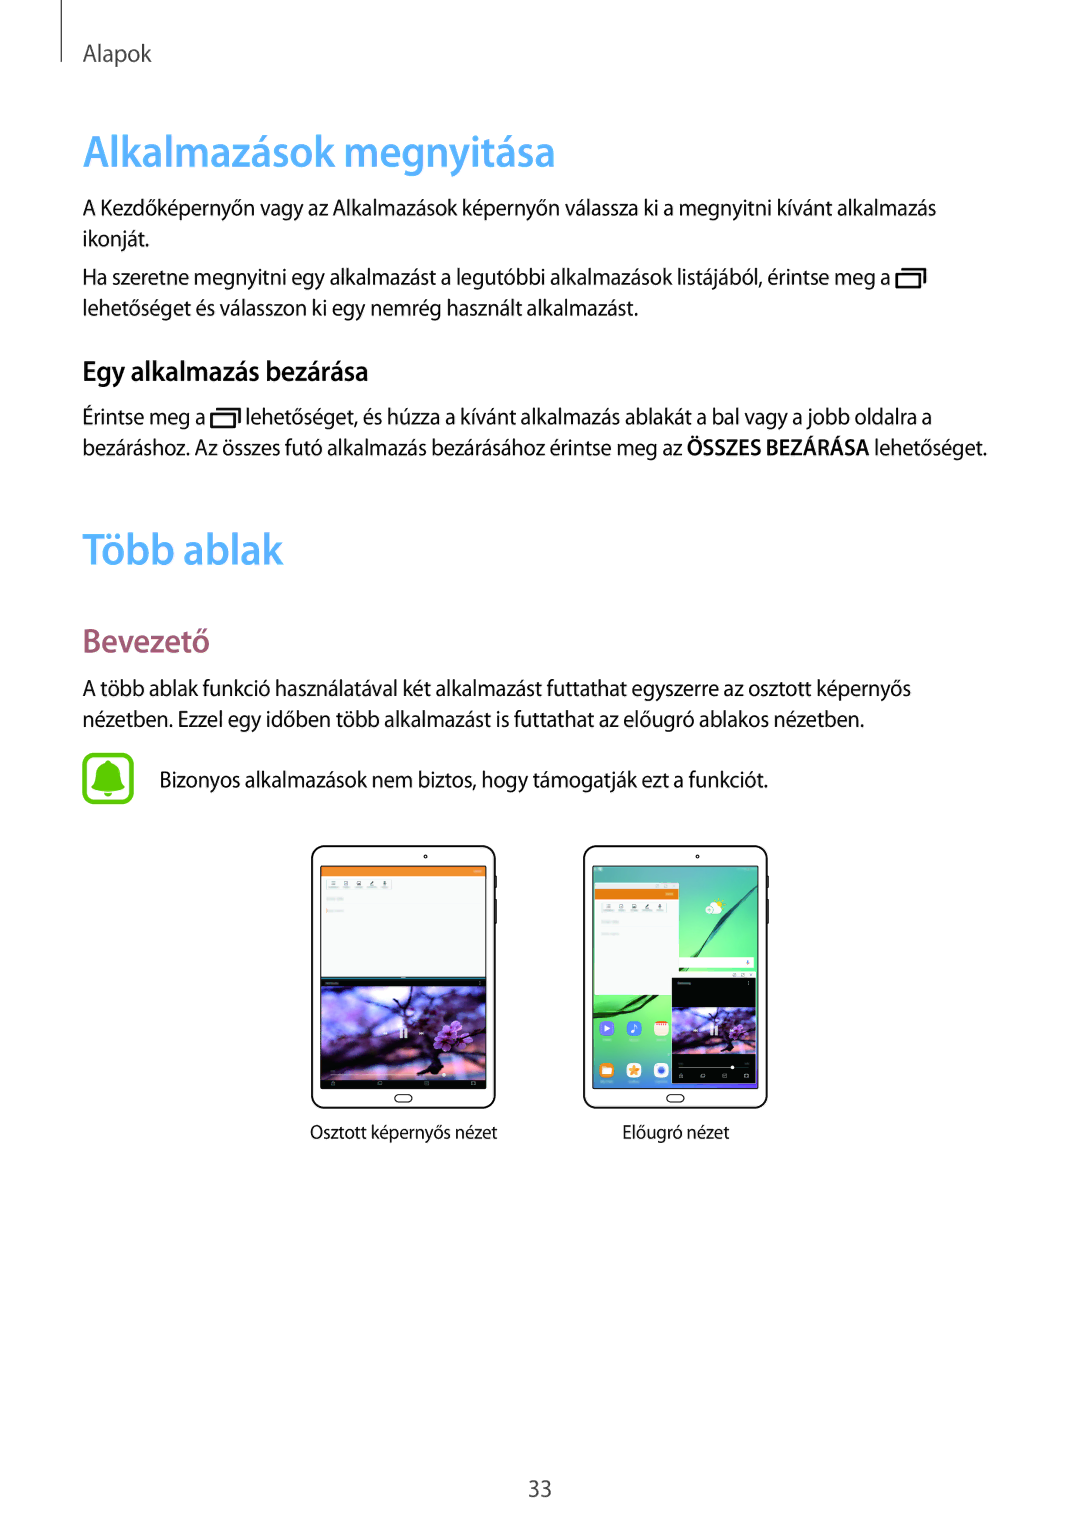 Samsung SM-T810NZKEXEH, SM-T710NZKEXEH manual Alkalmazások megnyitása, Több ablak, Bevezető, Egy alkalmazás bezárása 